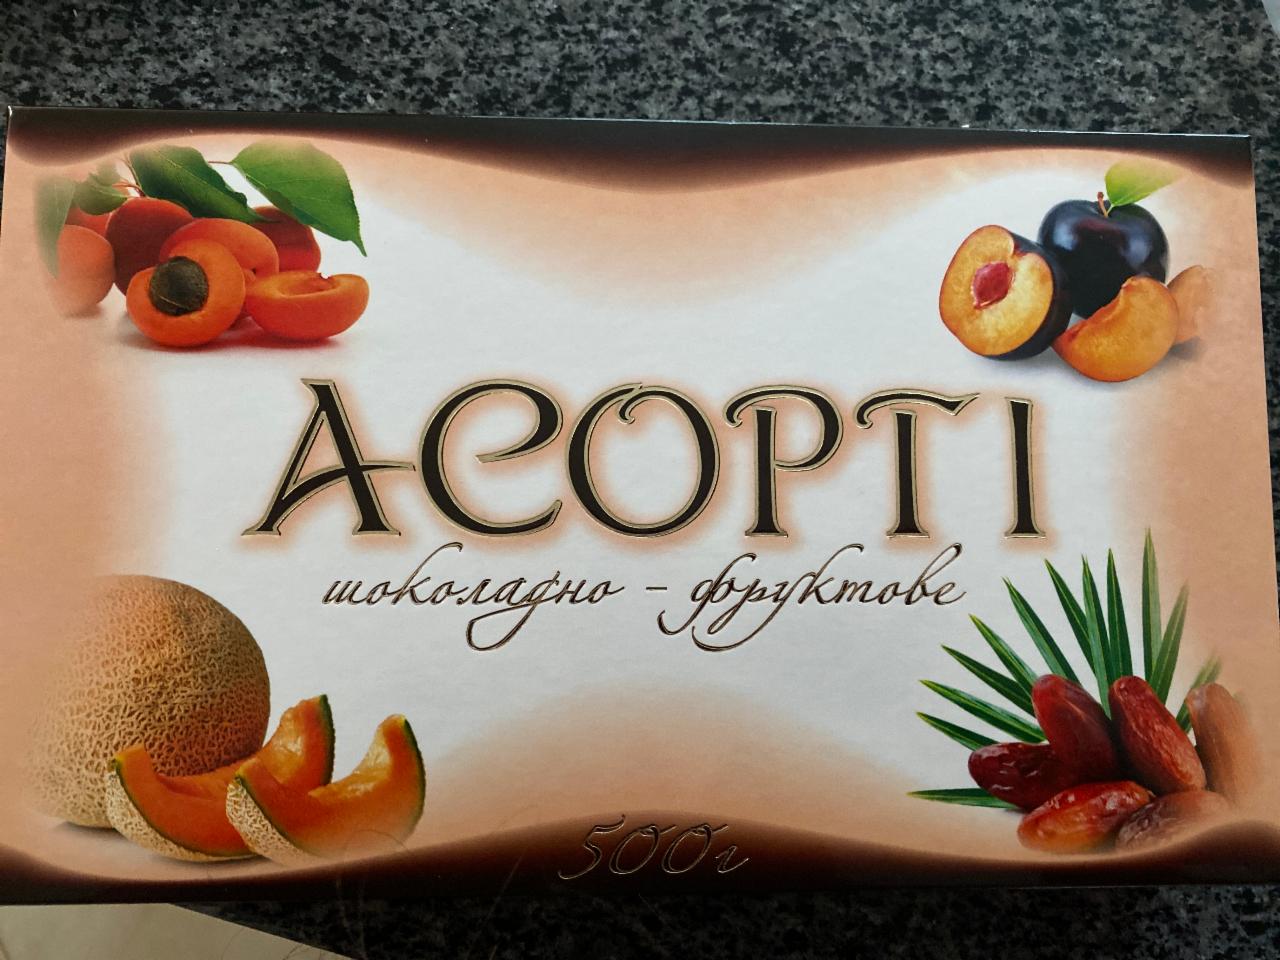 Фото - Конфеты Ассорти шоколадно-фруктовое Пинчук